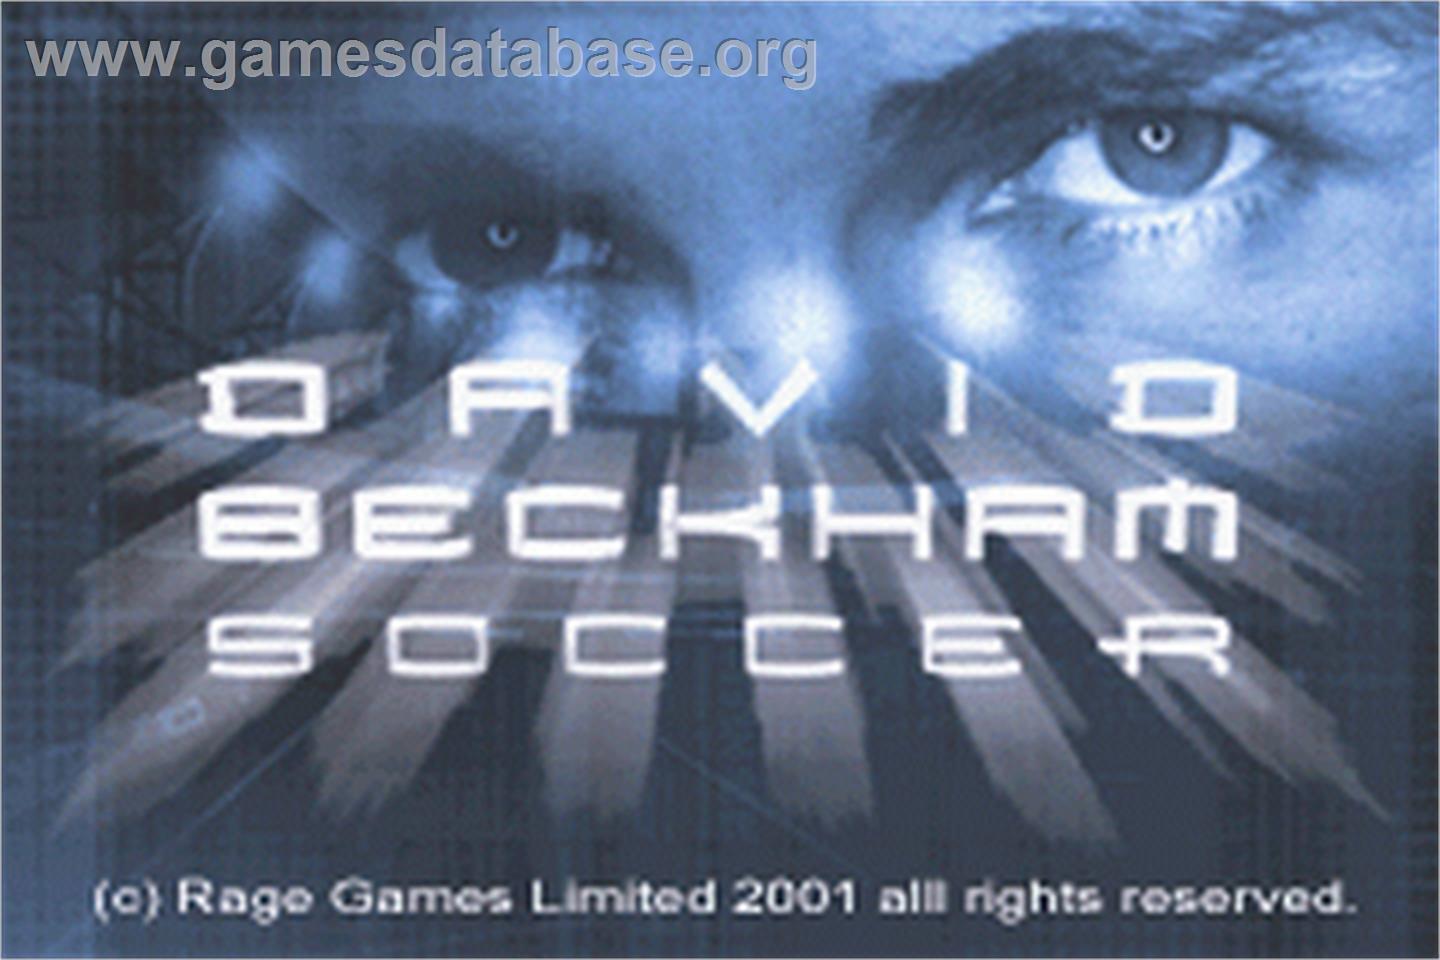 David Beckham Soccer - Nintendo Game Boy Advance - Artwork - Title Screen